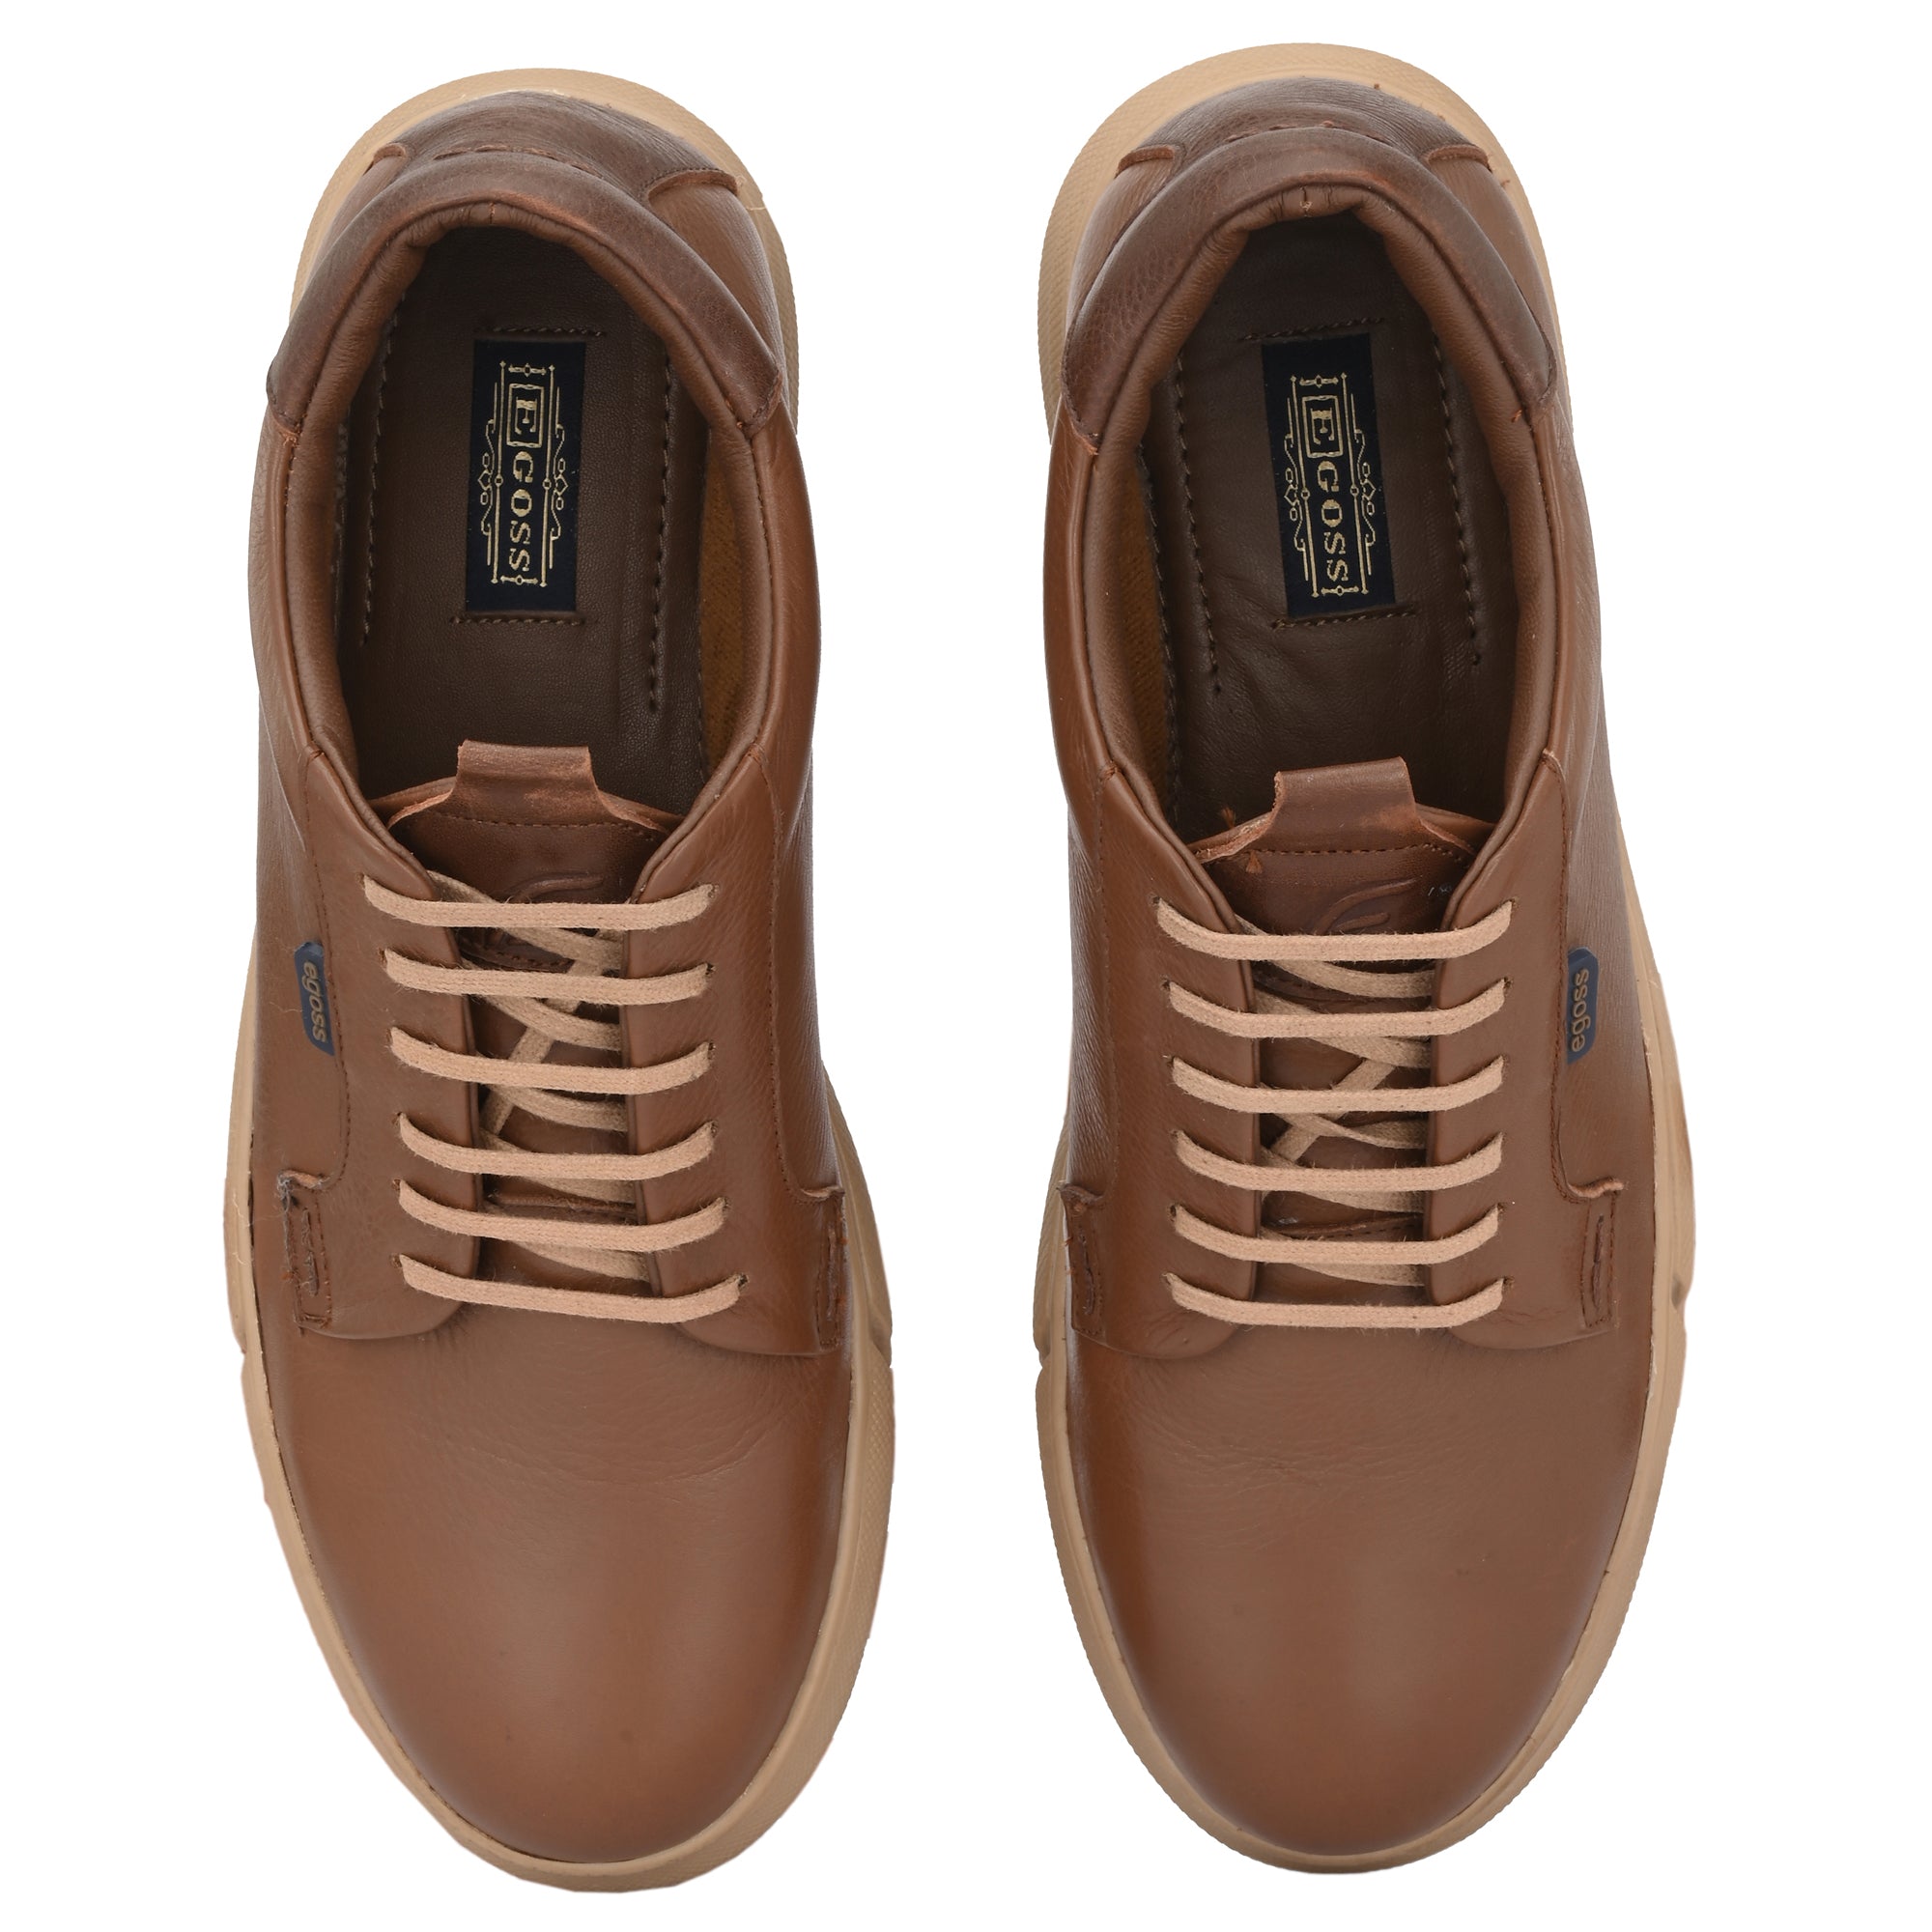 Buy Sneakers For Men Online – Egoss Shoes